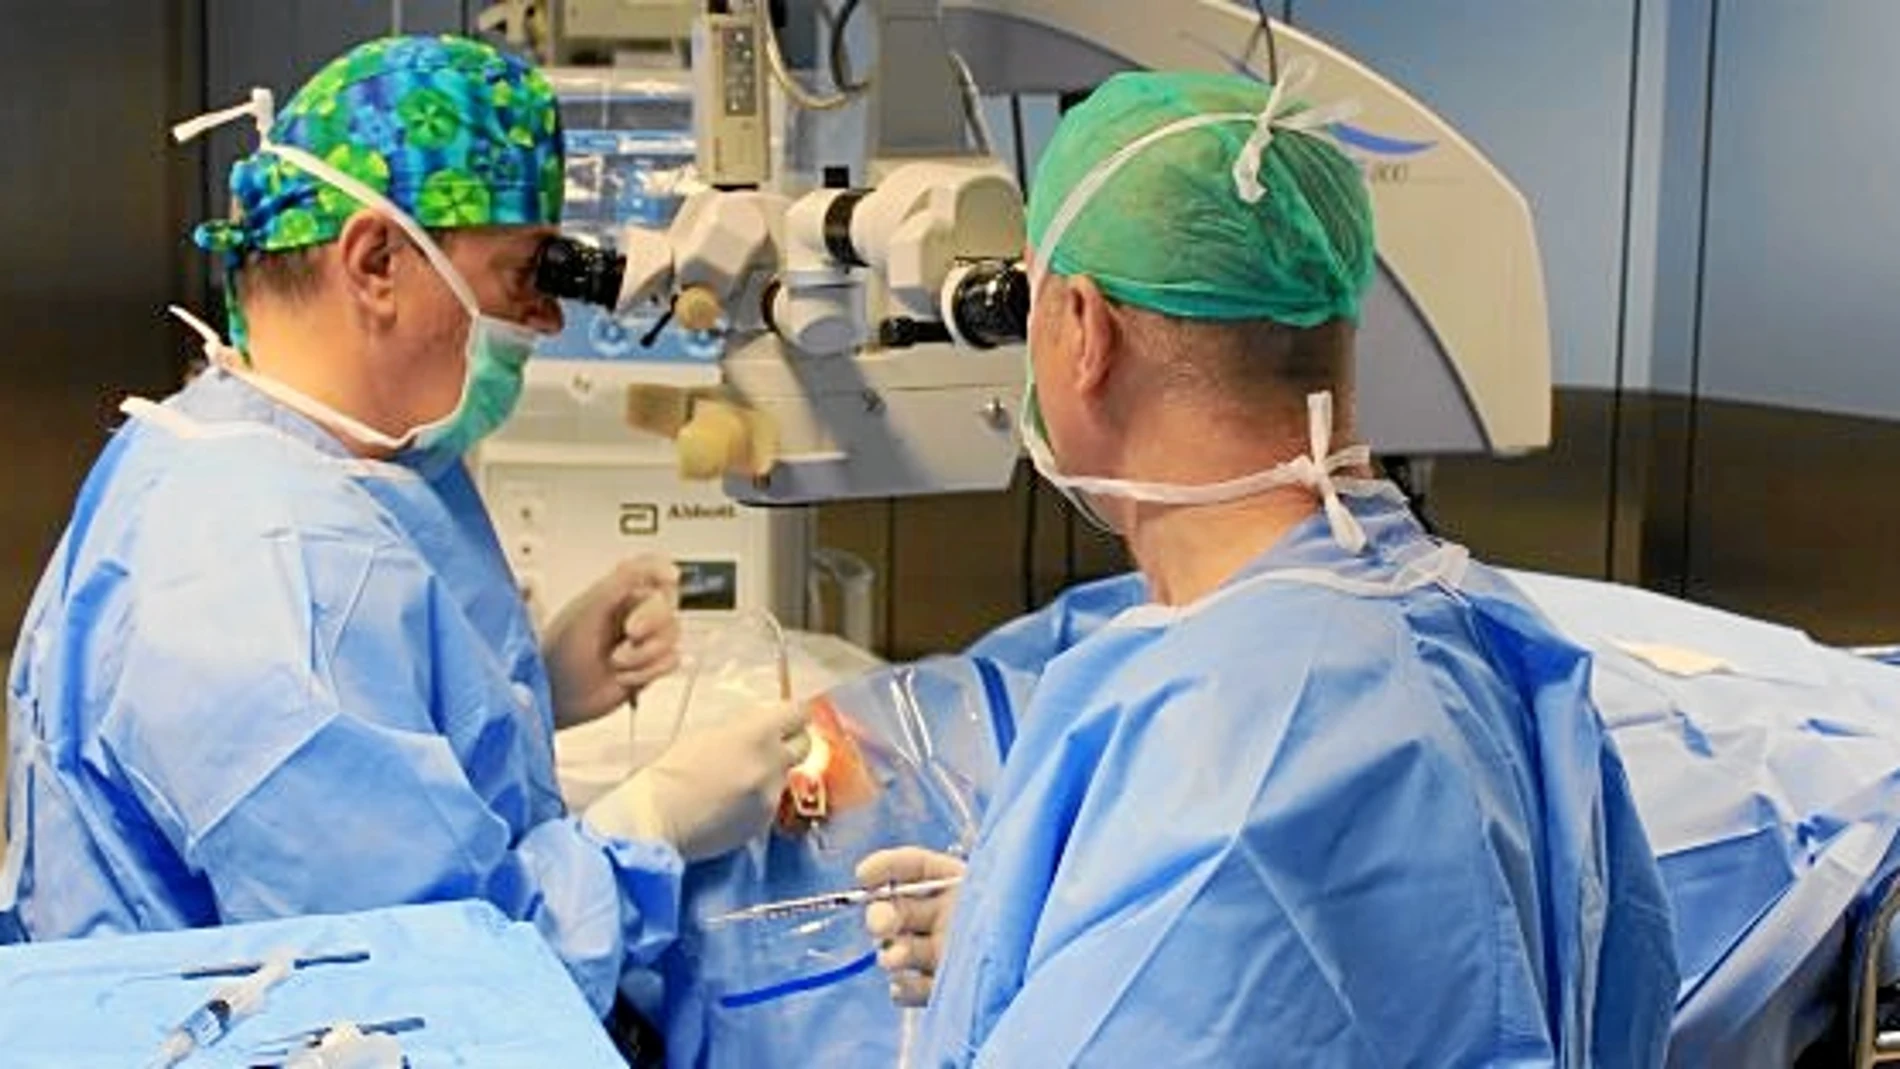 El equipo de oftalmología de la clínica Sagrada Familia tiene previsto trabajar gratis en agosto en su centro del distrito barcelonés de Sarrià–Sant Gervasi